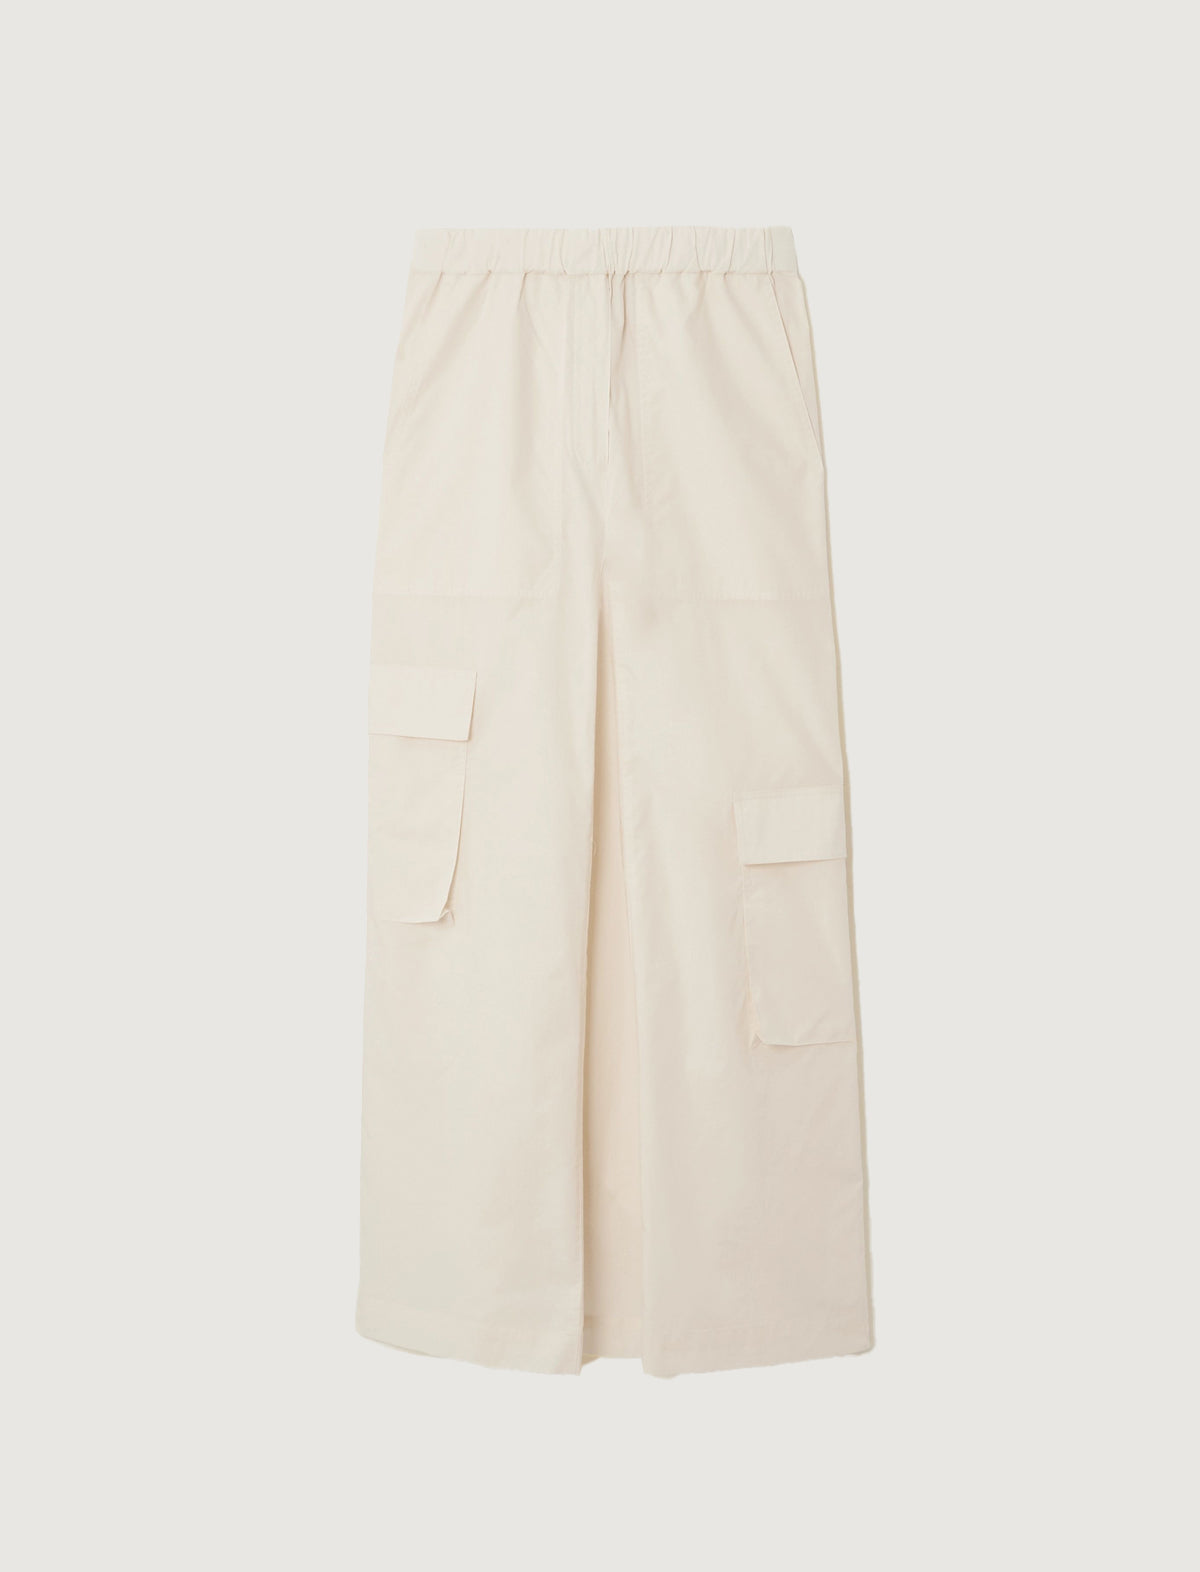 TIBI Vintage Cotton Pull-On Cargo Godet Skirt in Cream